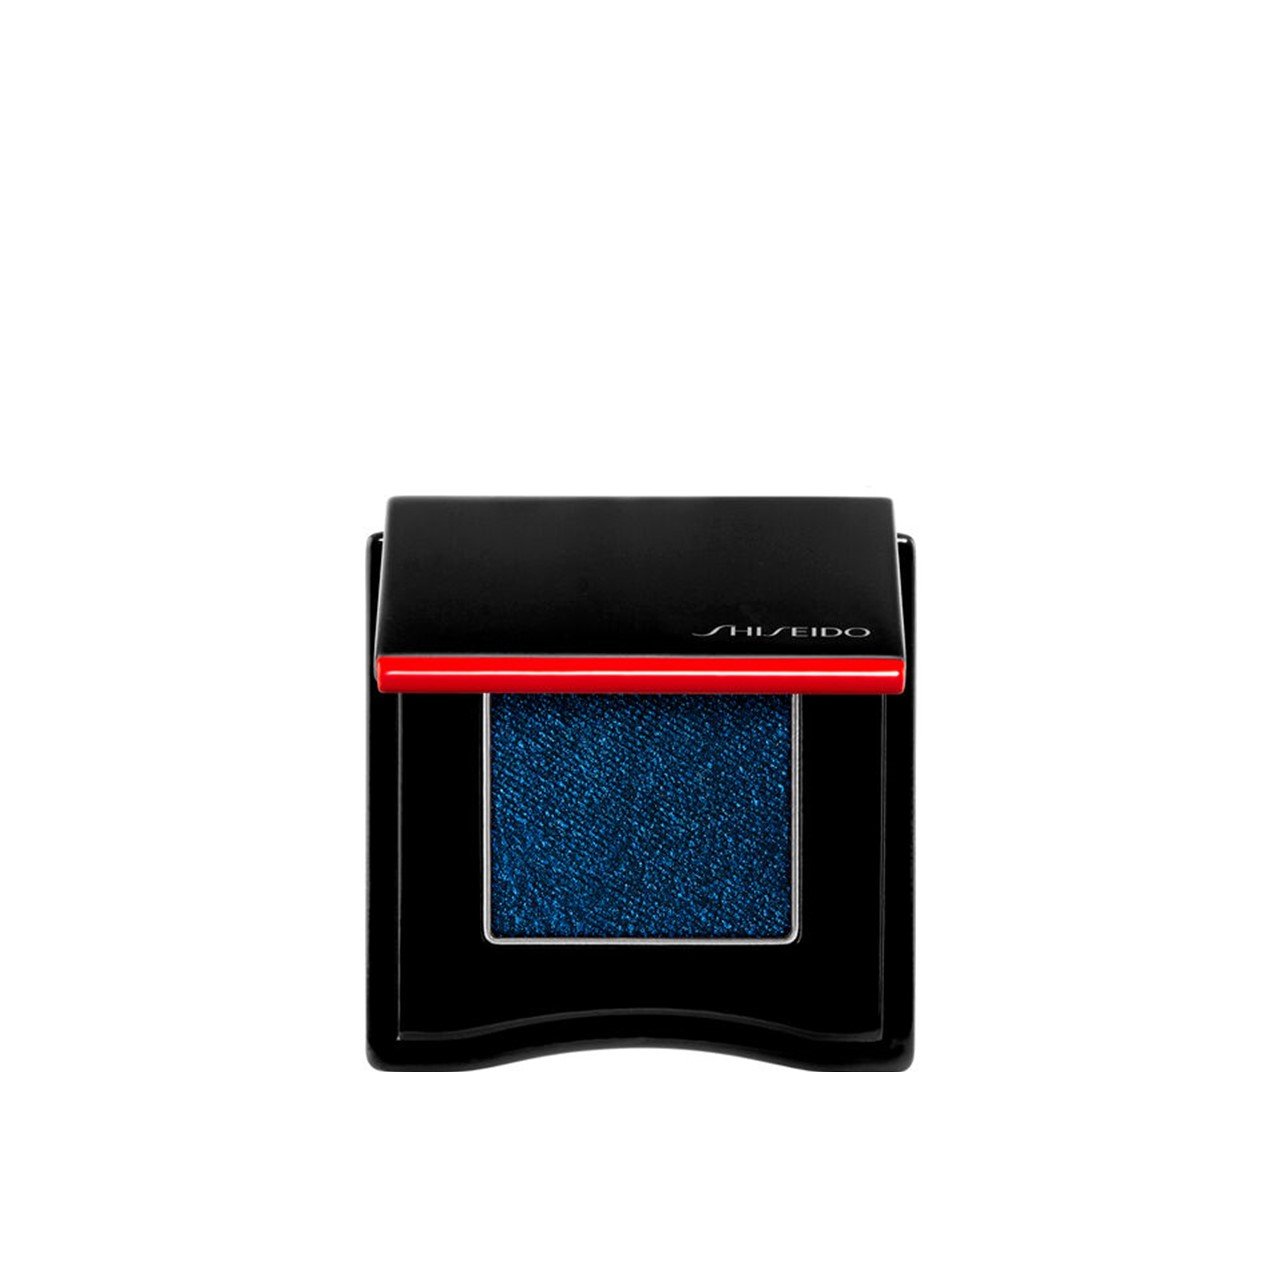 Shiseido POP PowderGel Eye Shadow 17 Zaa-Zaa Navy 2.2g (0.08oz)